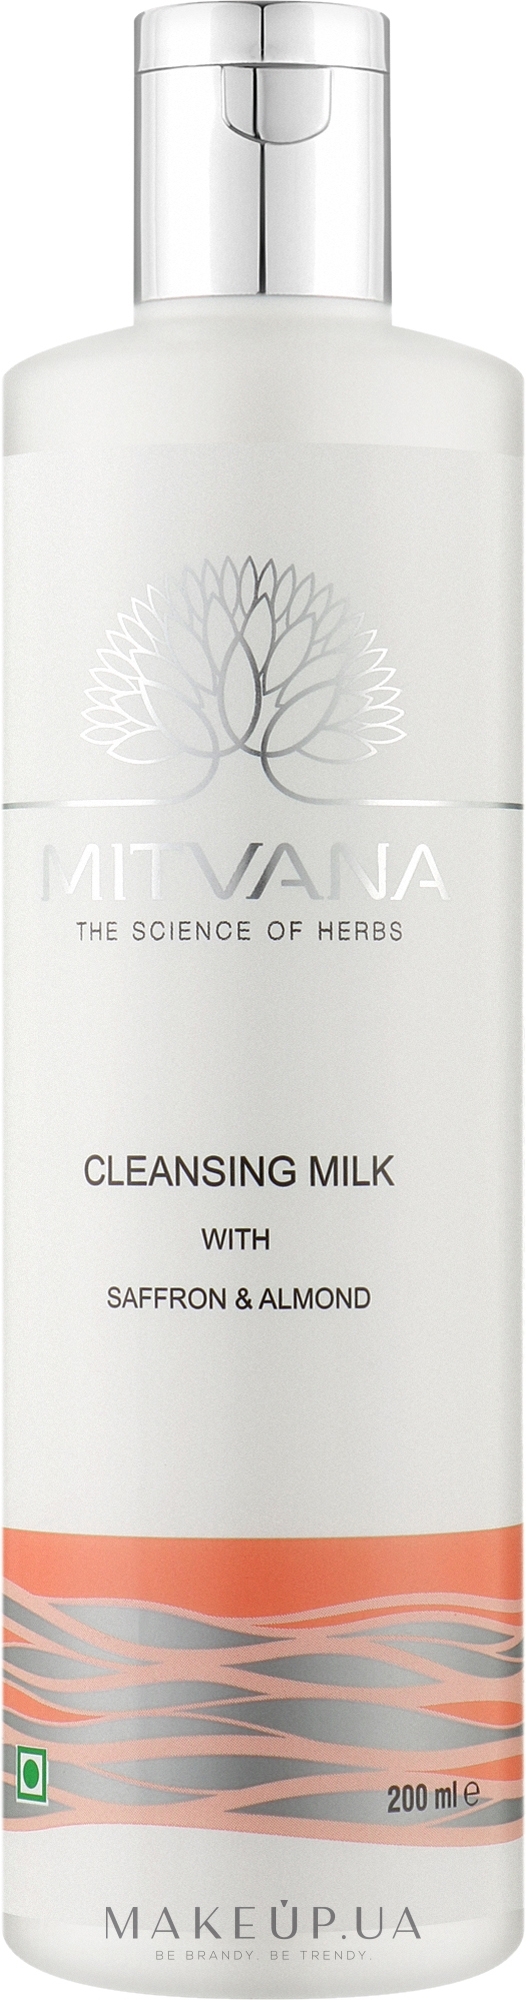 Очищающее молочко для лица с шафраном и миндалем - Mitvana Cleansing Milk — фото 200ml